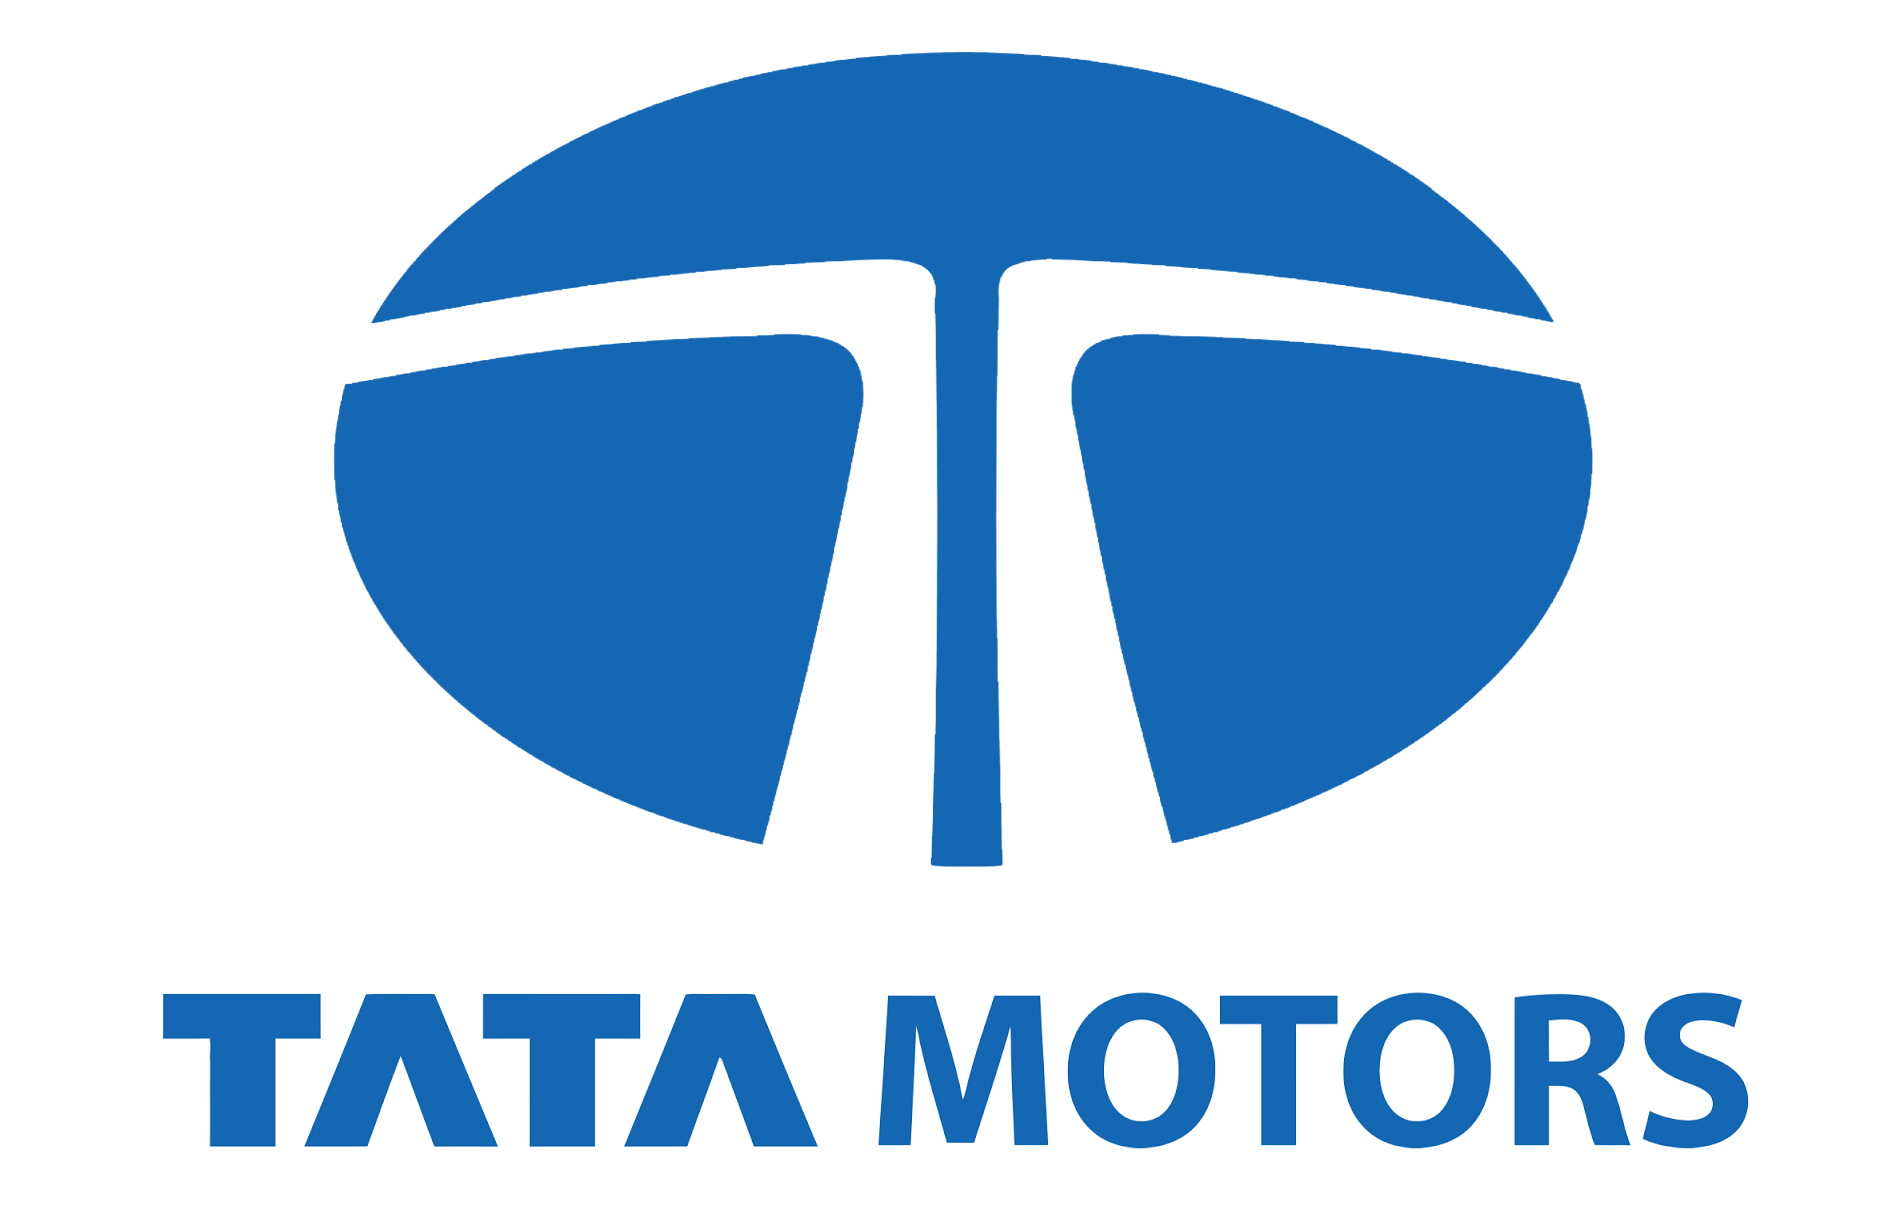 Tata Motors Cars Showroom - JKR Motors|Show Room|Automotive